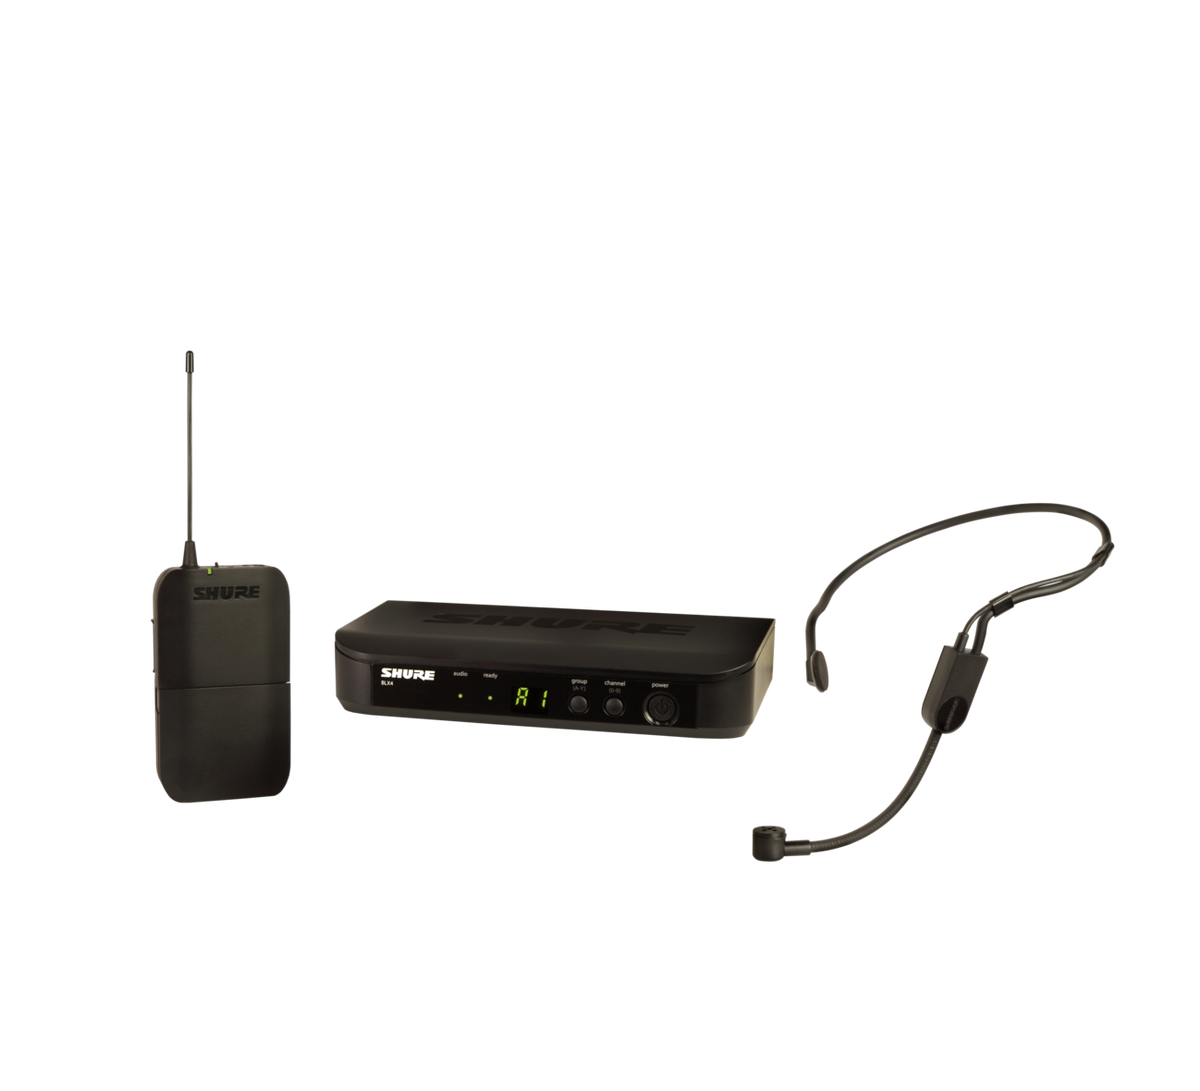 Sistema de micrófono inalámbrico en diadema y solapa - GMU-HSL100 - MaxiTec